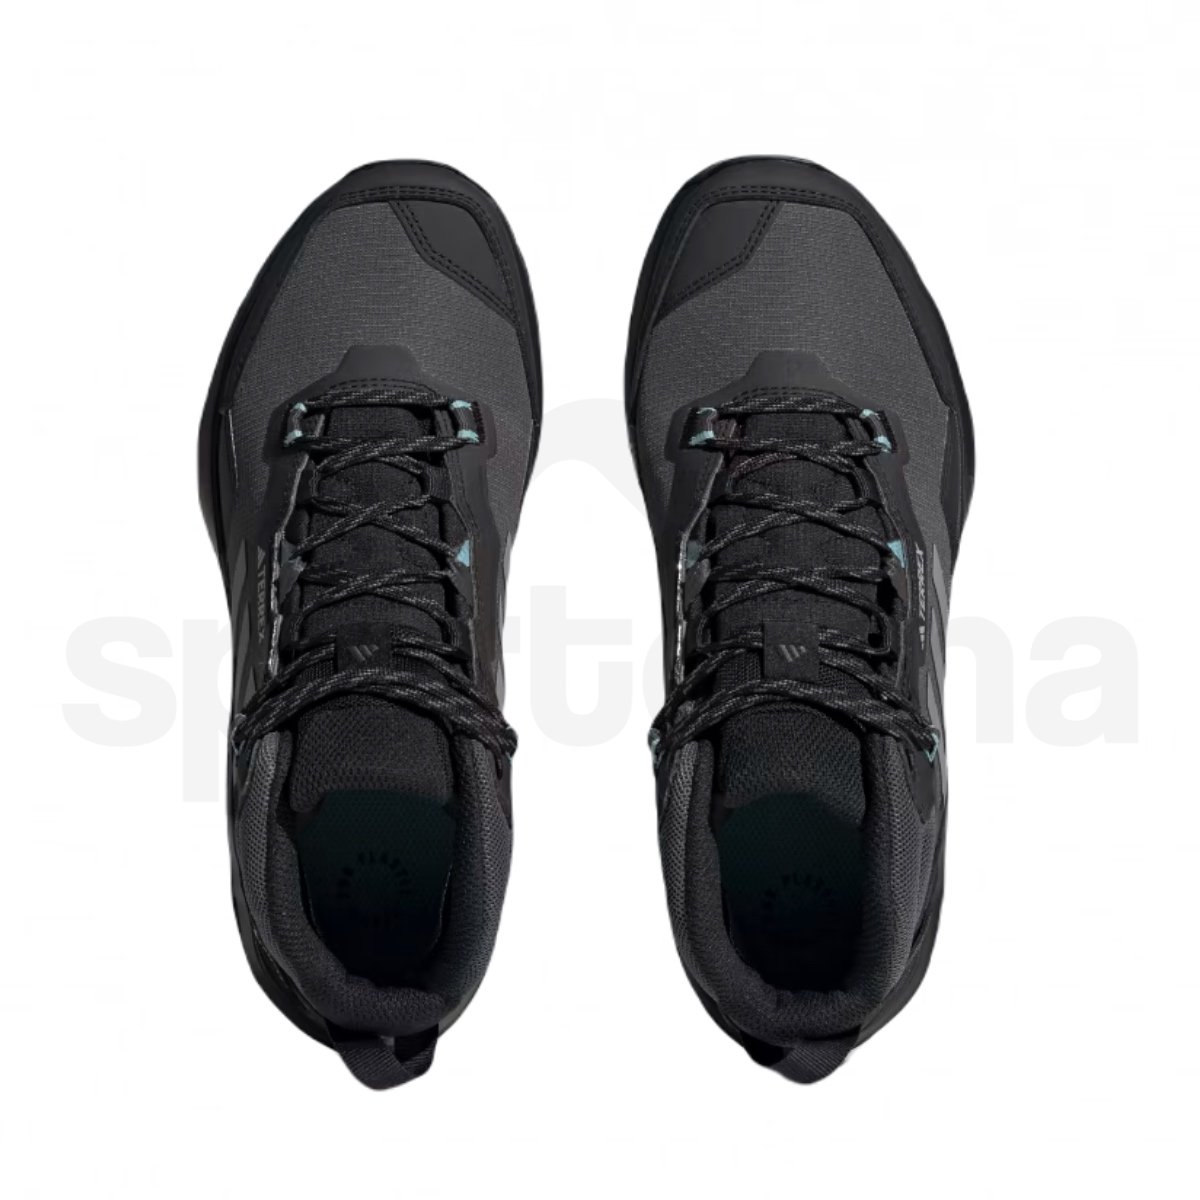 Obuv Adidas Terrex AX4 MID GTX W - černá/šedá